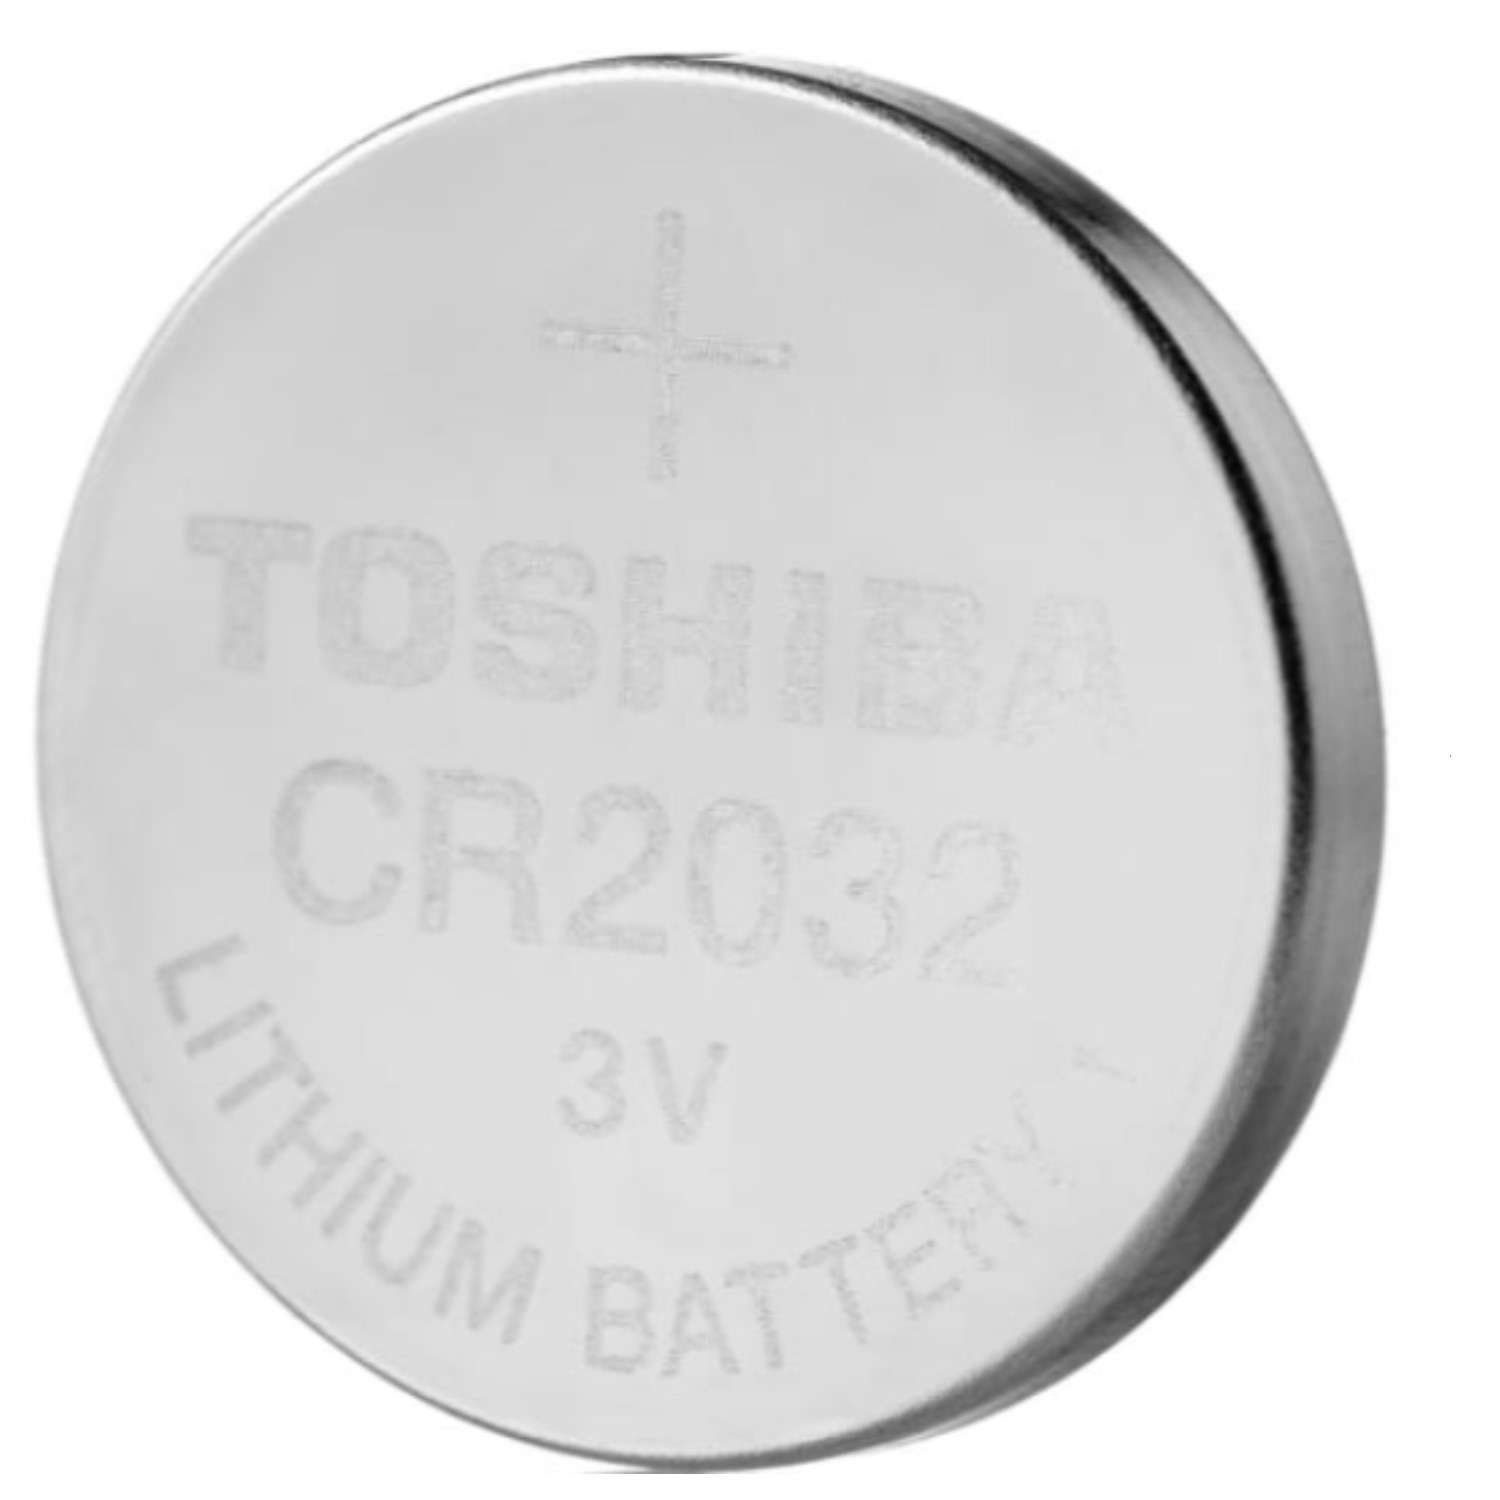 Батарейки Toshiba литиевые Таблетка Special 5шт CR2032 3V - фото 2